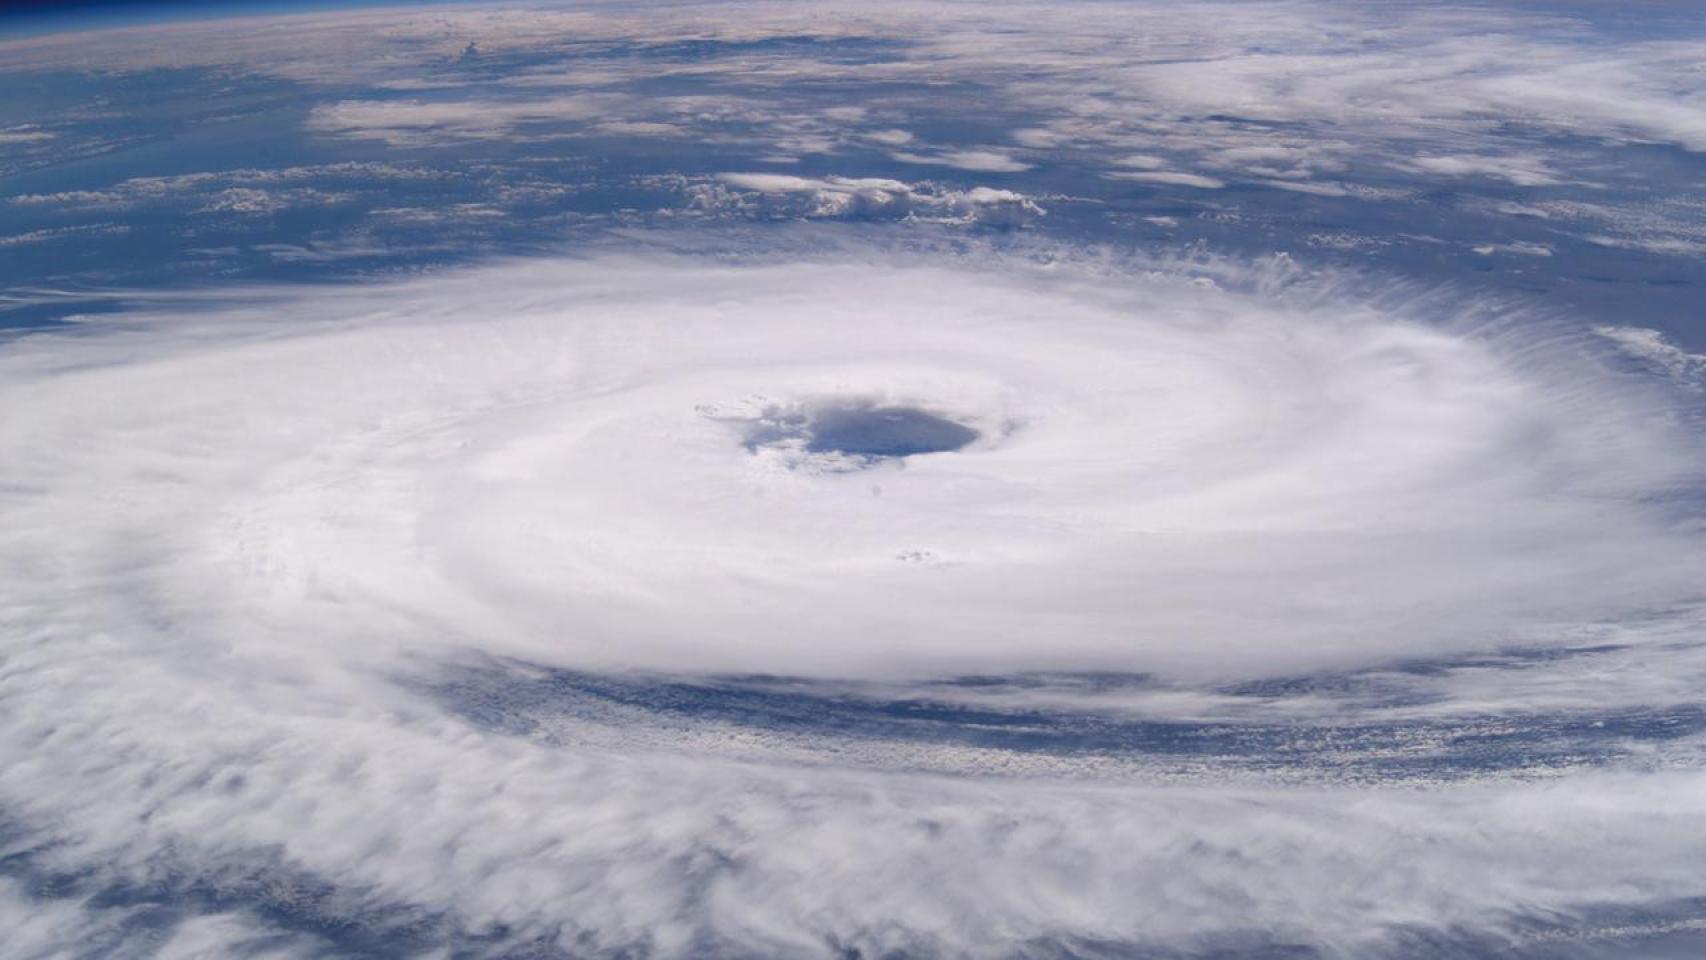 Какая планета известна своим гигантским ураганом